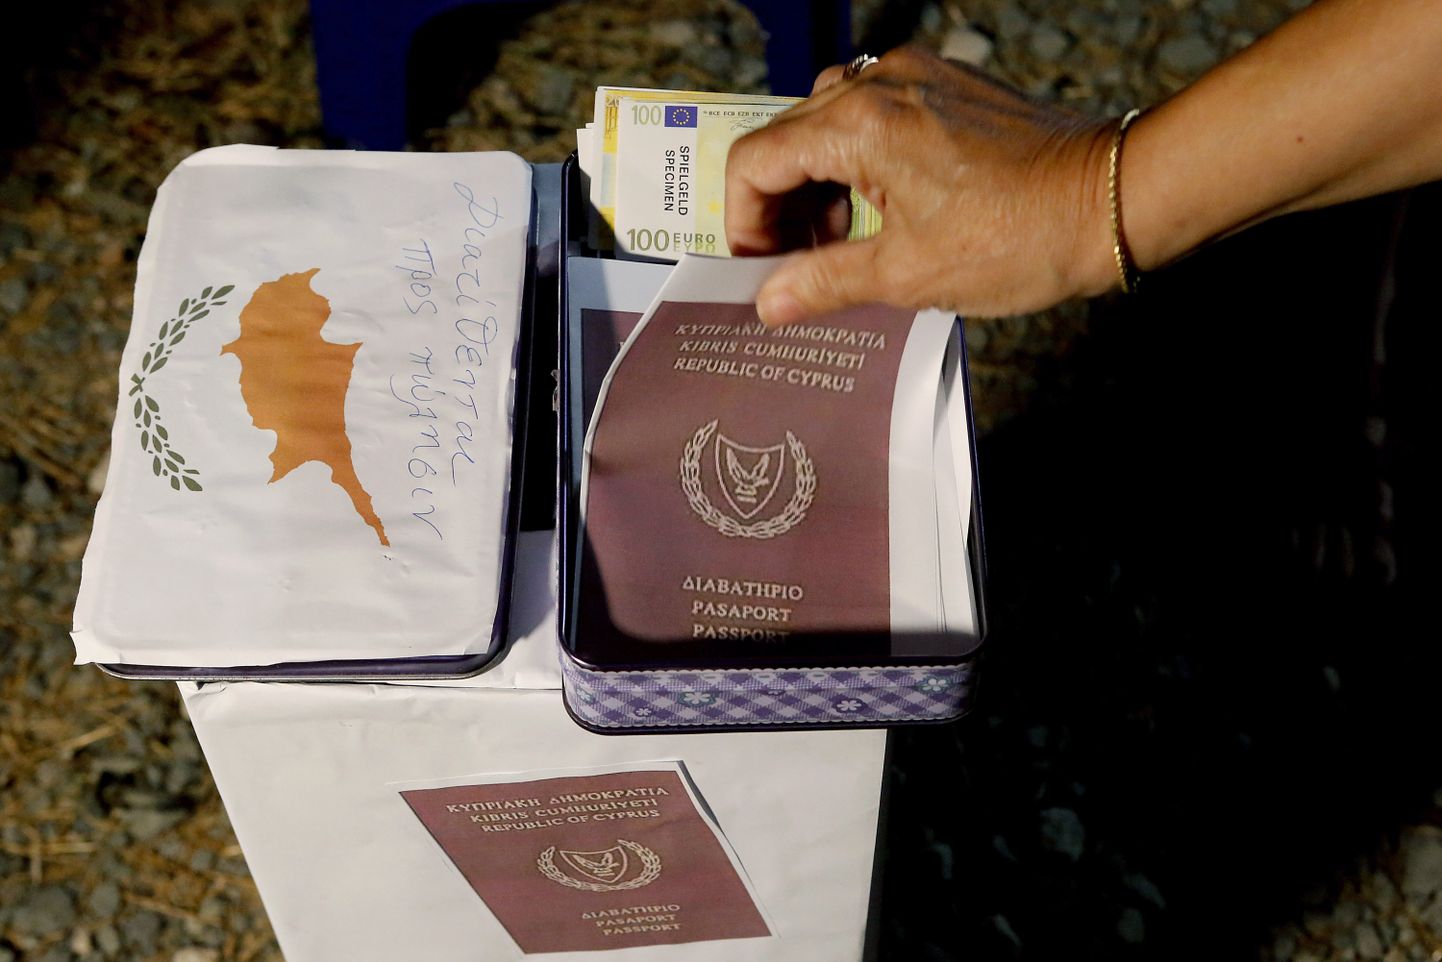 Акция протеста против выдачи паспортов Кипра инвесторам.